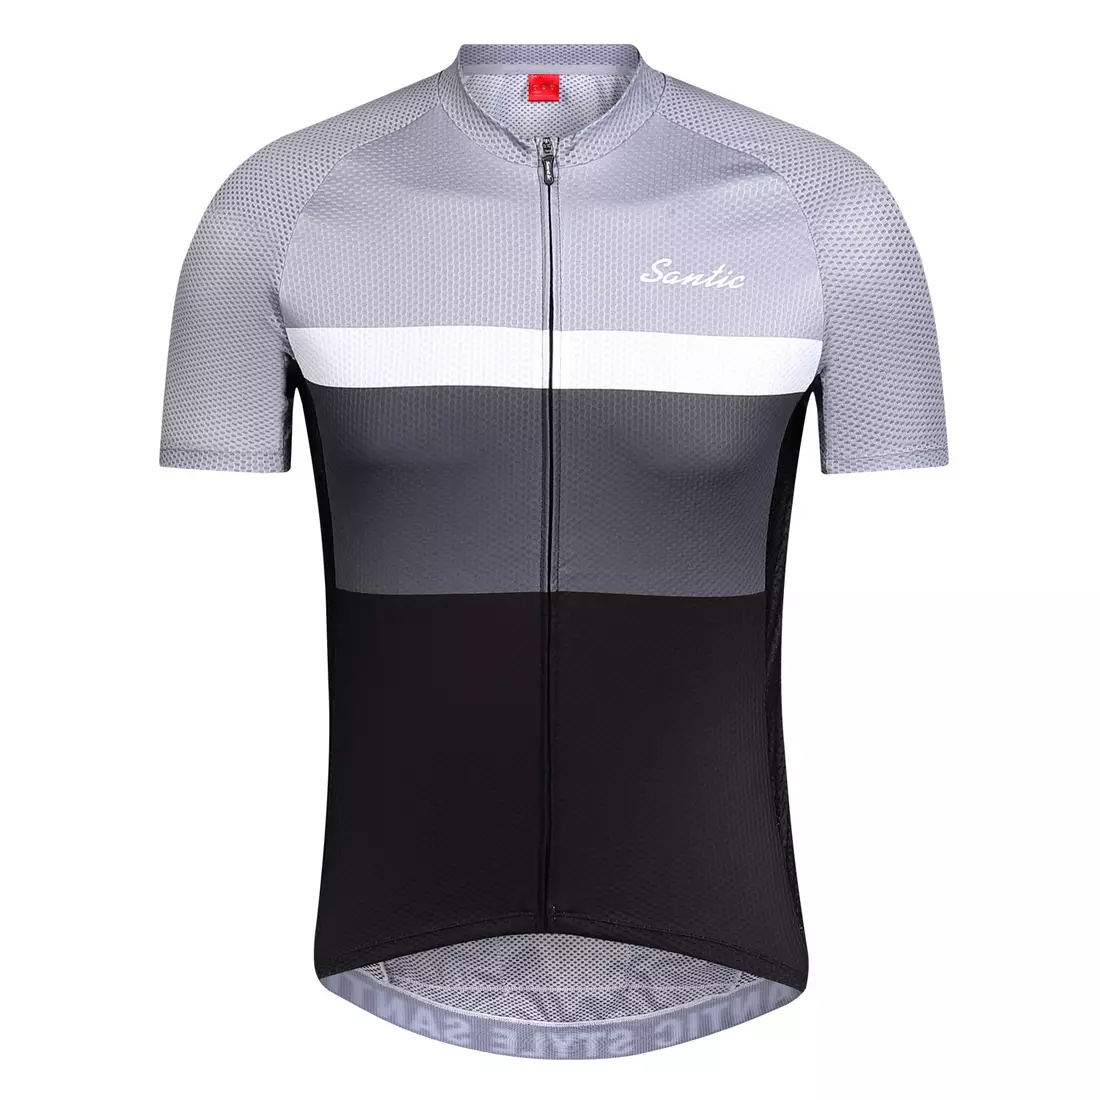 SANTIC QM9C02138G men's cycling jersey, gray and black